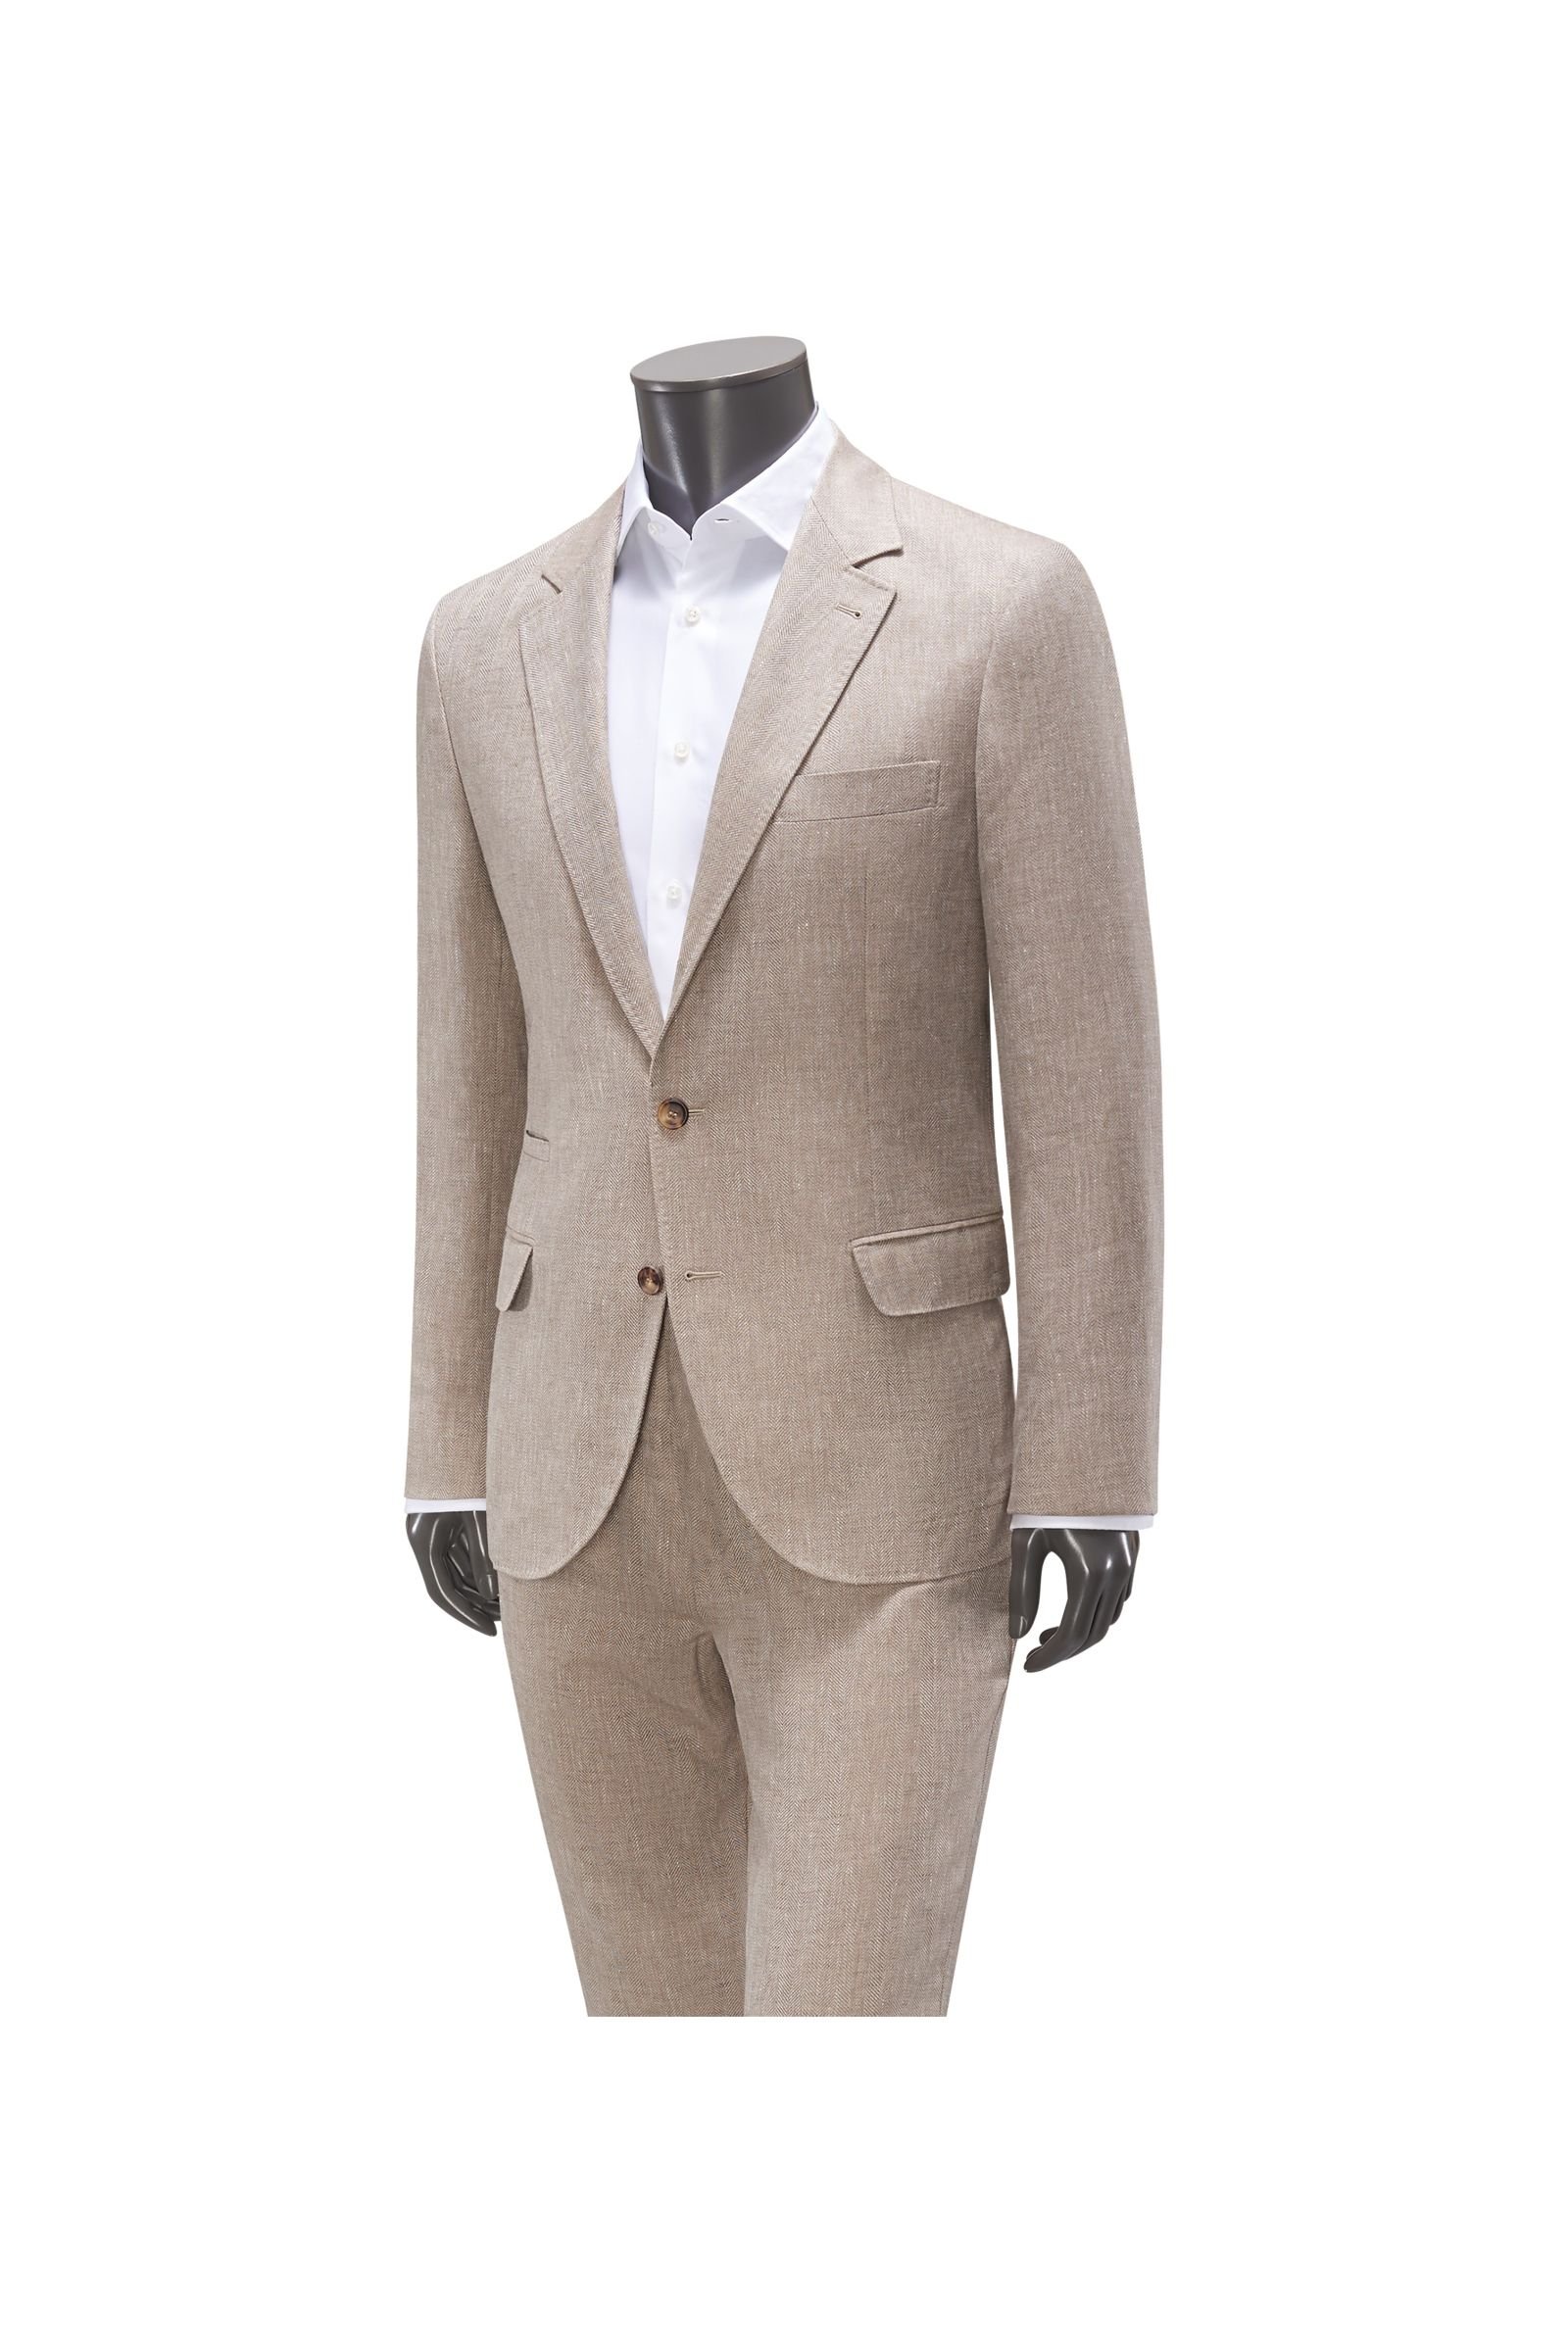 Suit beige patterned